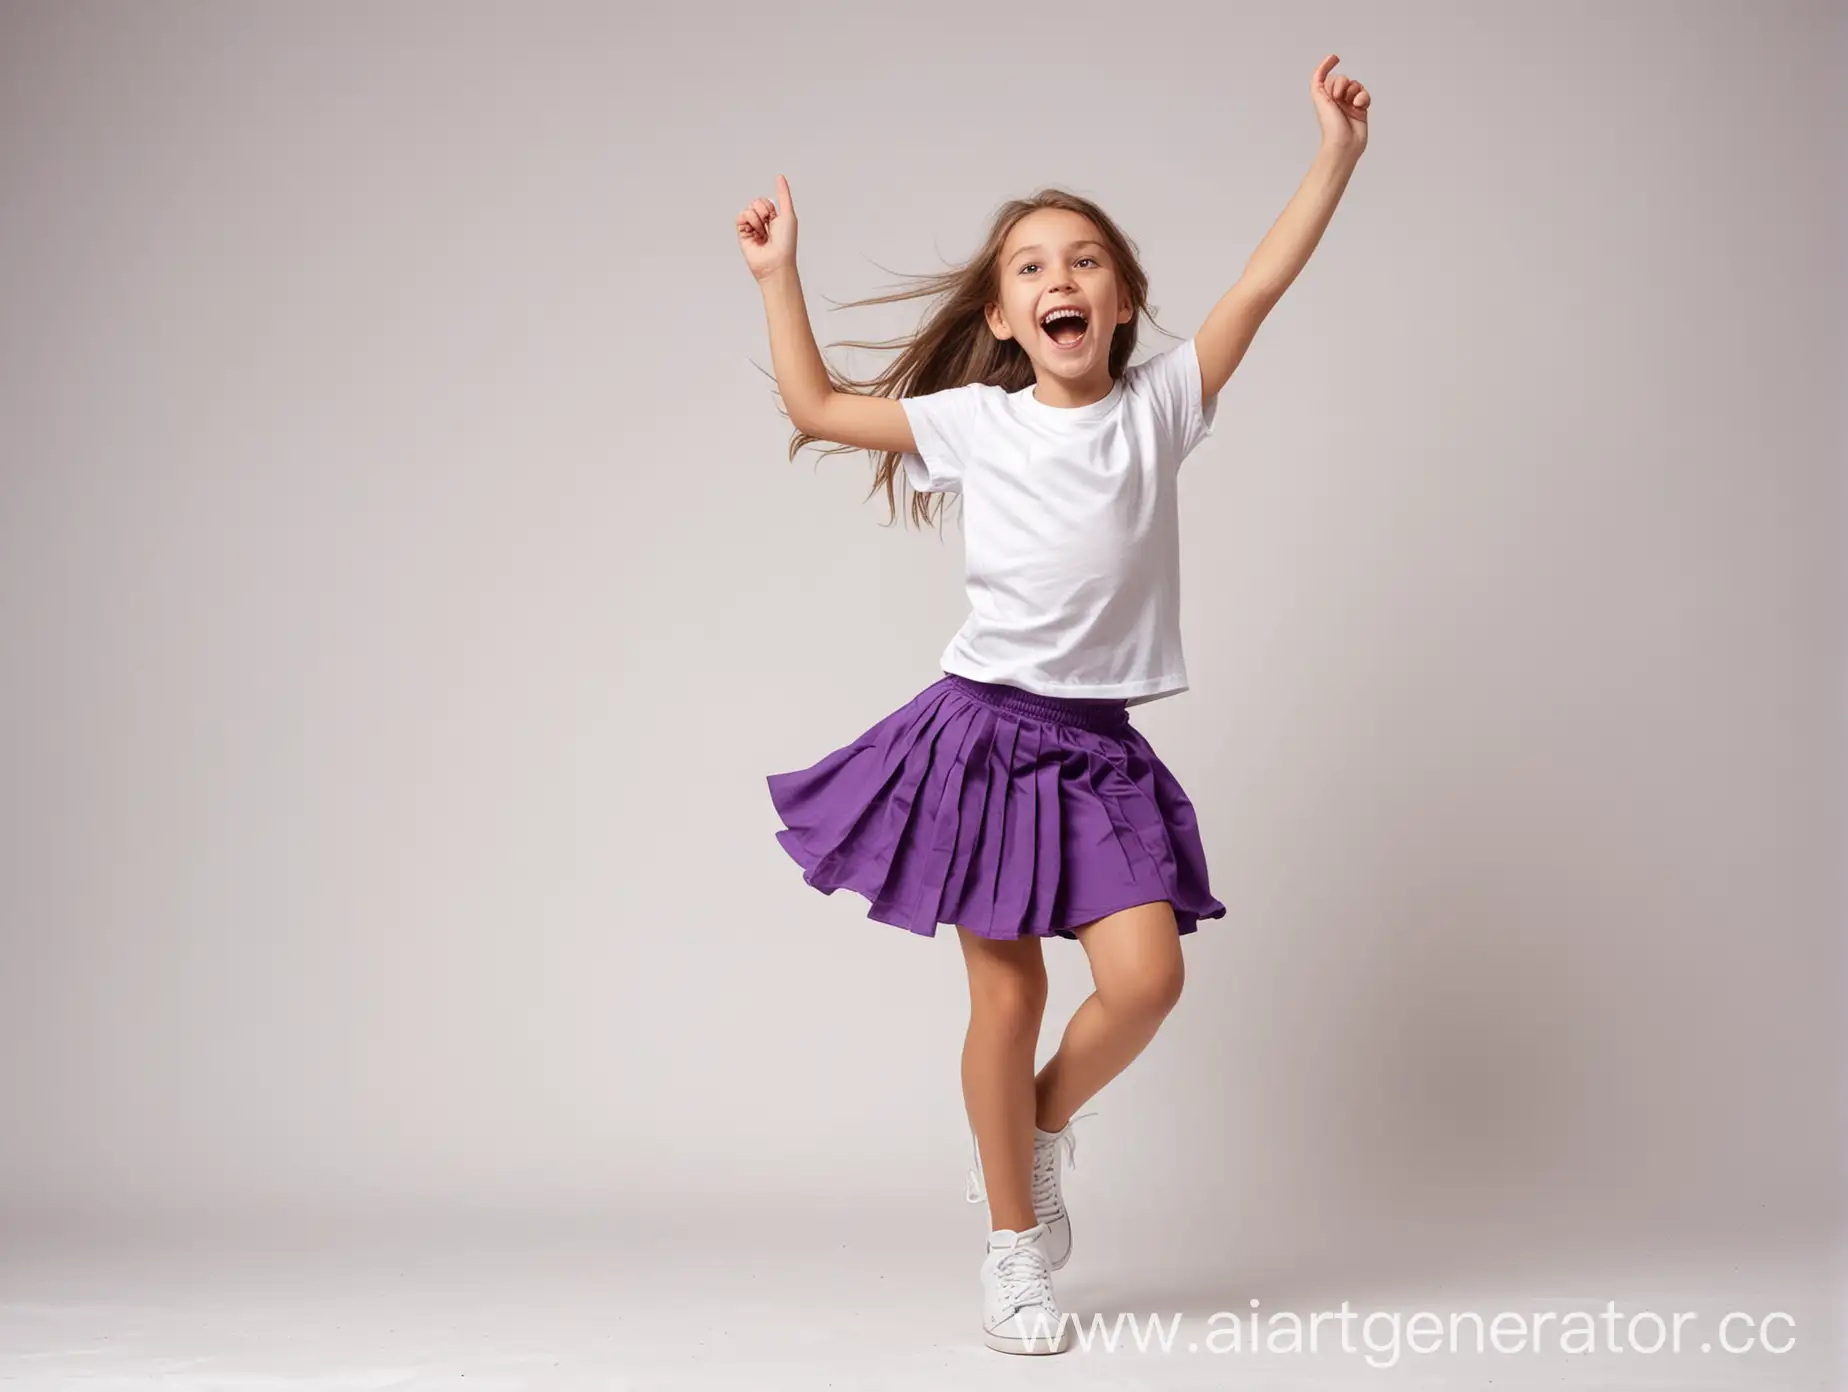 Joyful-10YearOld-Girl-Jumping-in-White-TShirt-and-Purple-Skirt